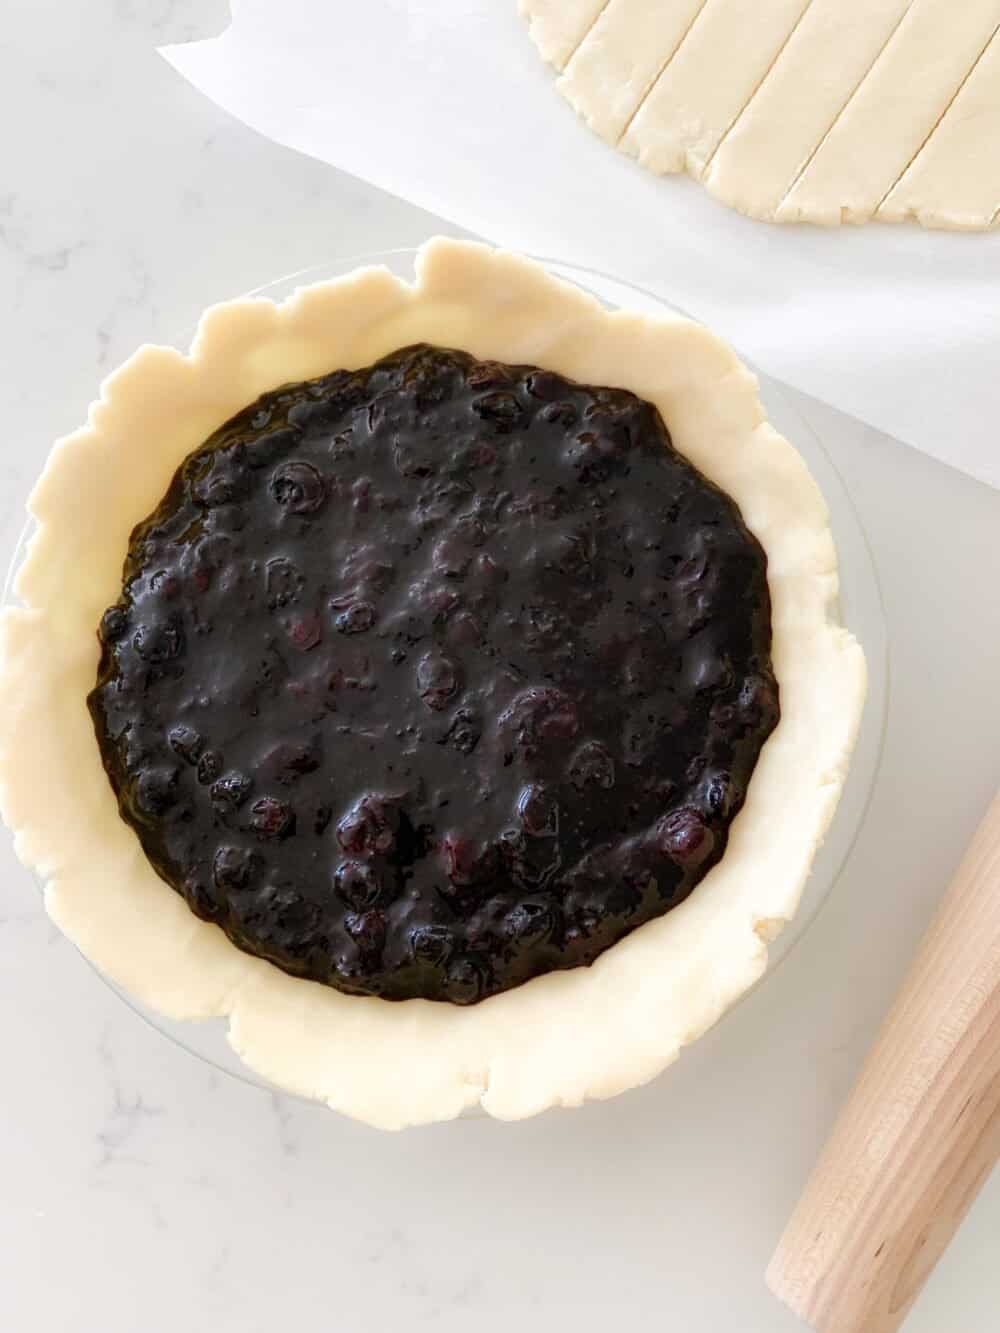 blueberry pie filling inside pie crust